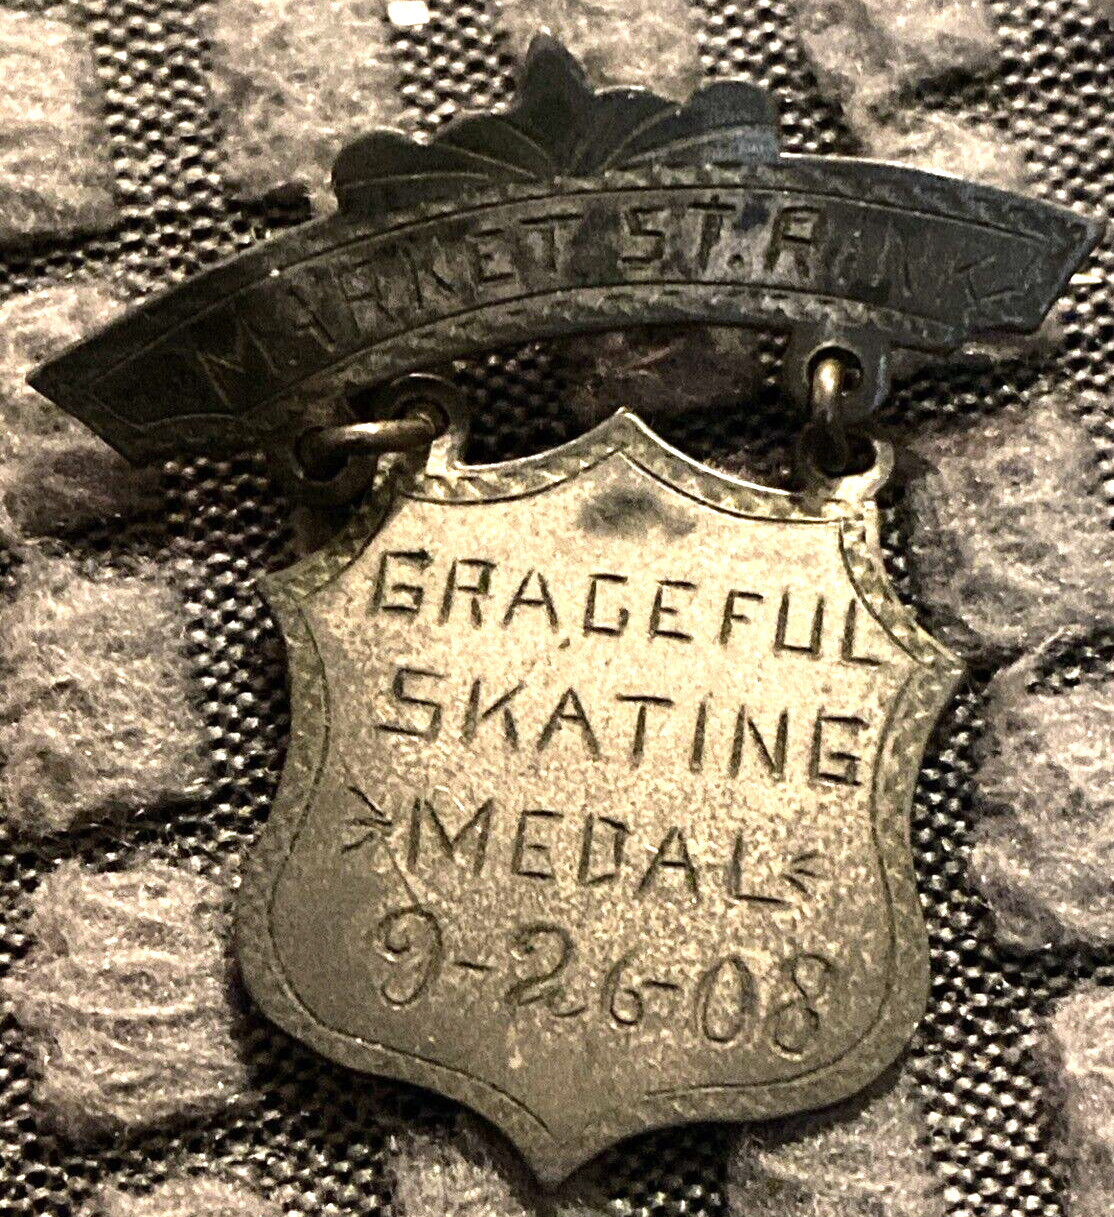 1908 Market St. Rink Graceful Skating Medal